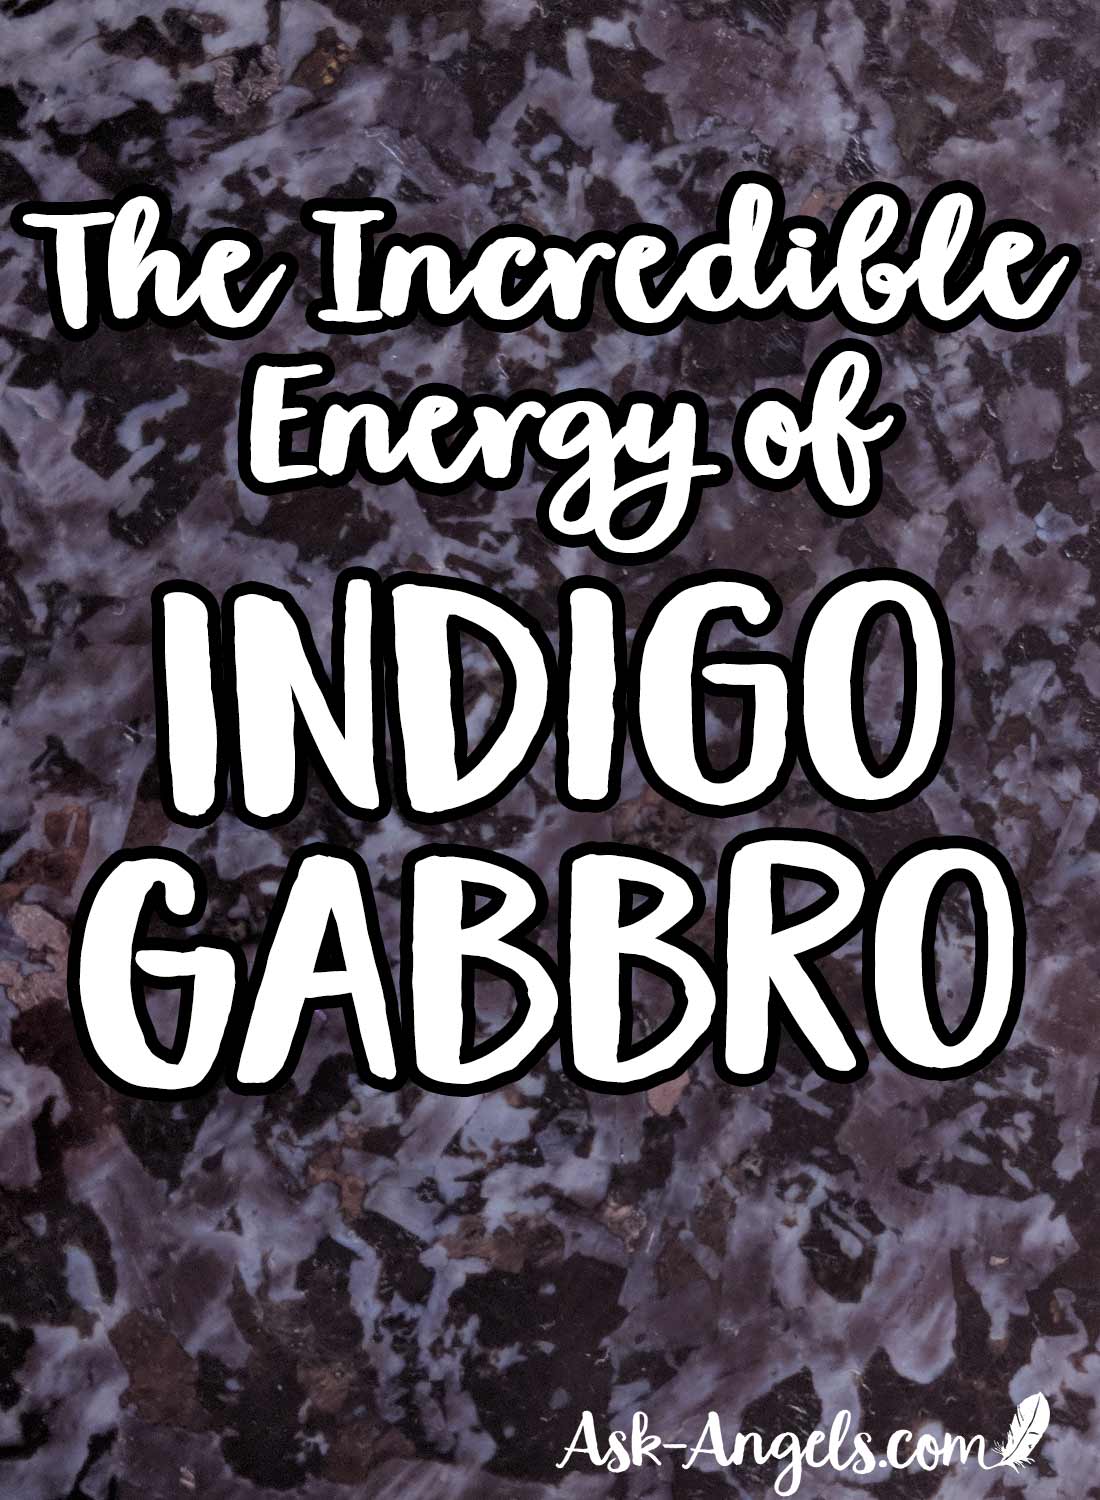 The Incredible Energy of Indigo Gabbro